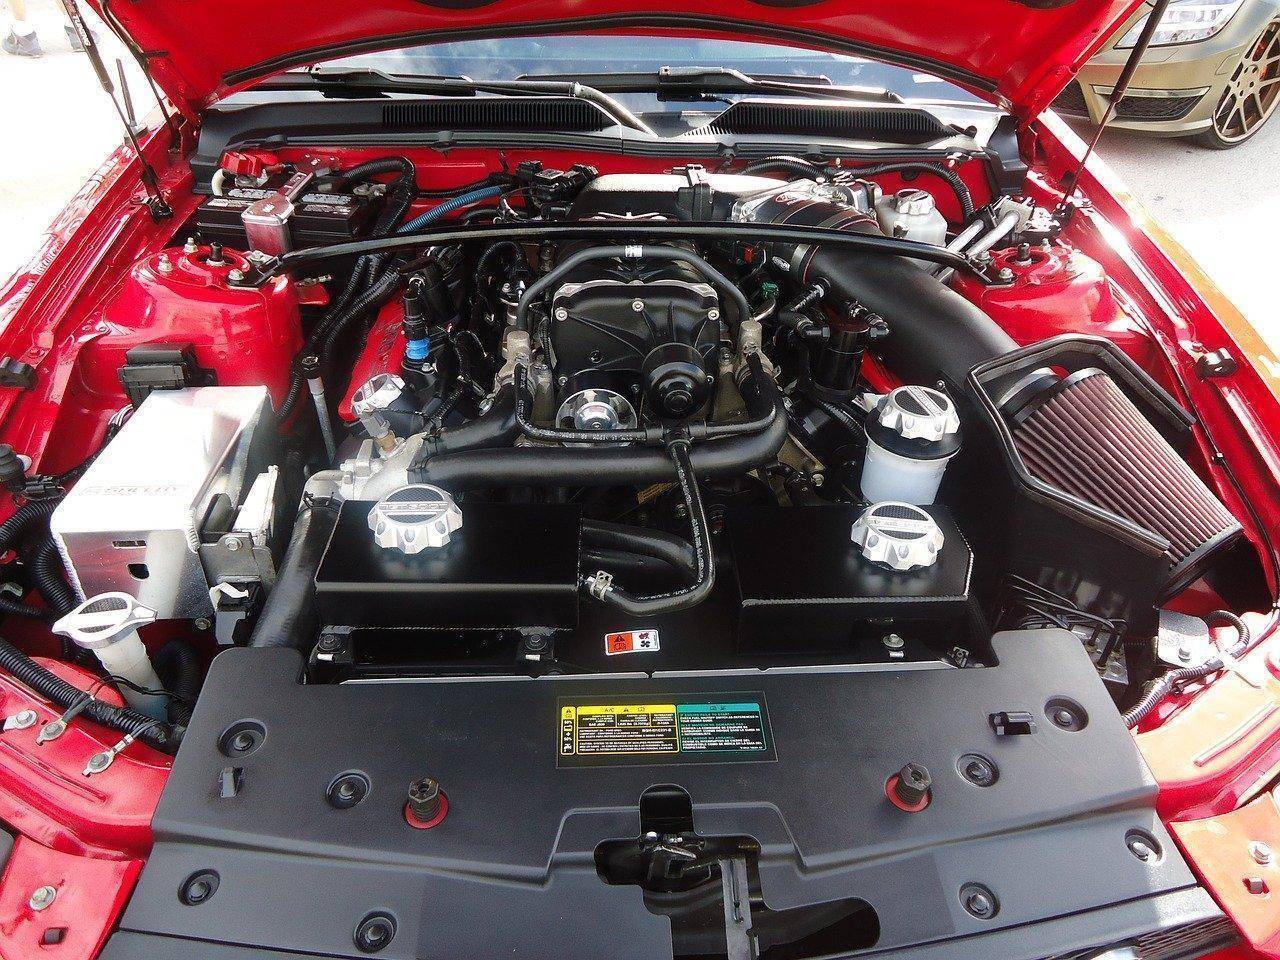 OiCar-引擎空氣濾芯就像是車輛的口罩，而高流量空氣濾芯又有麼用呢?!